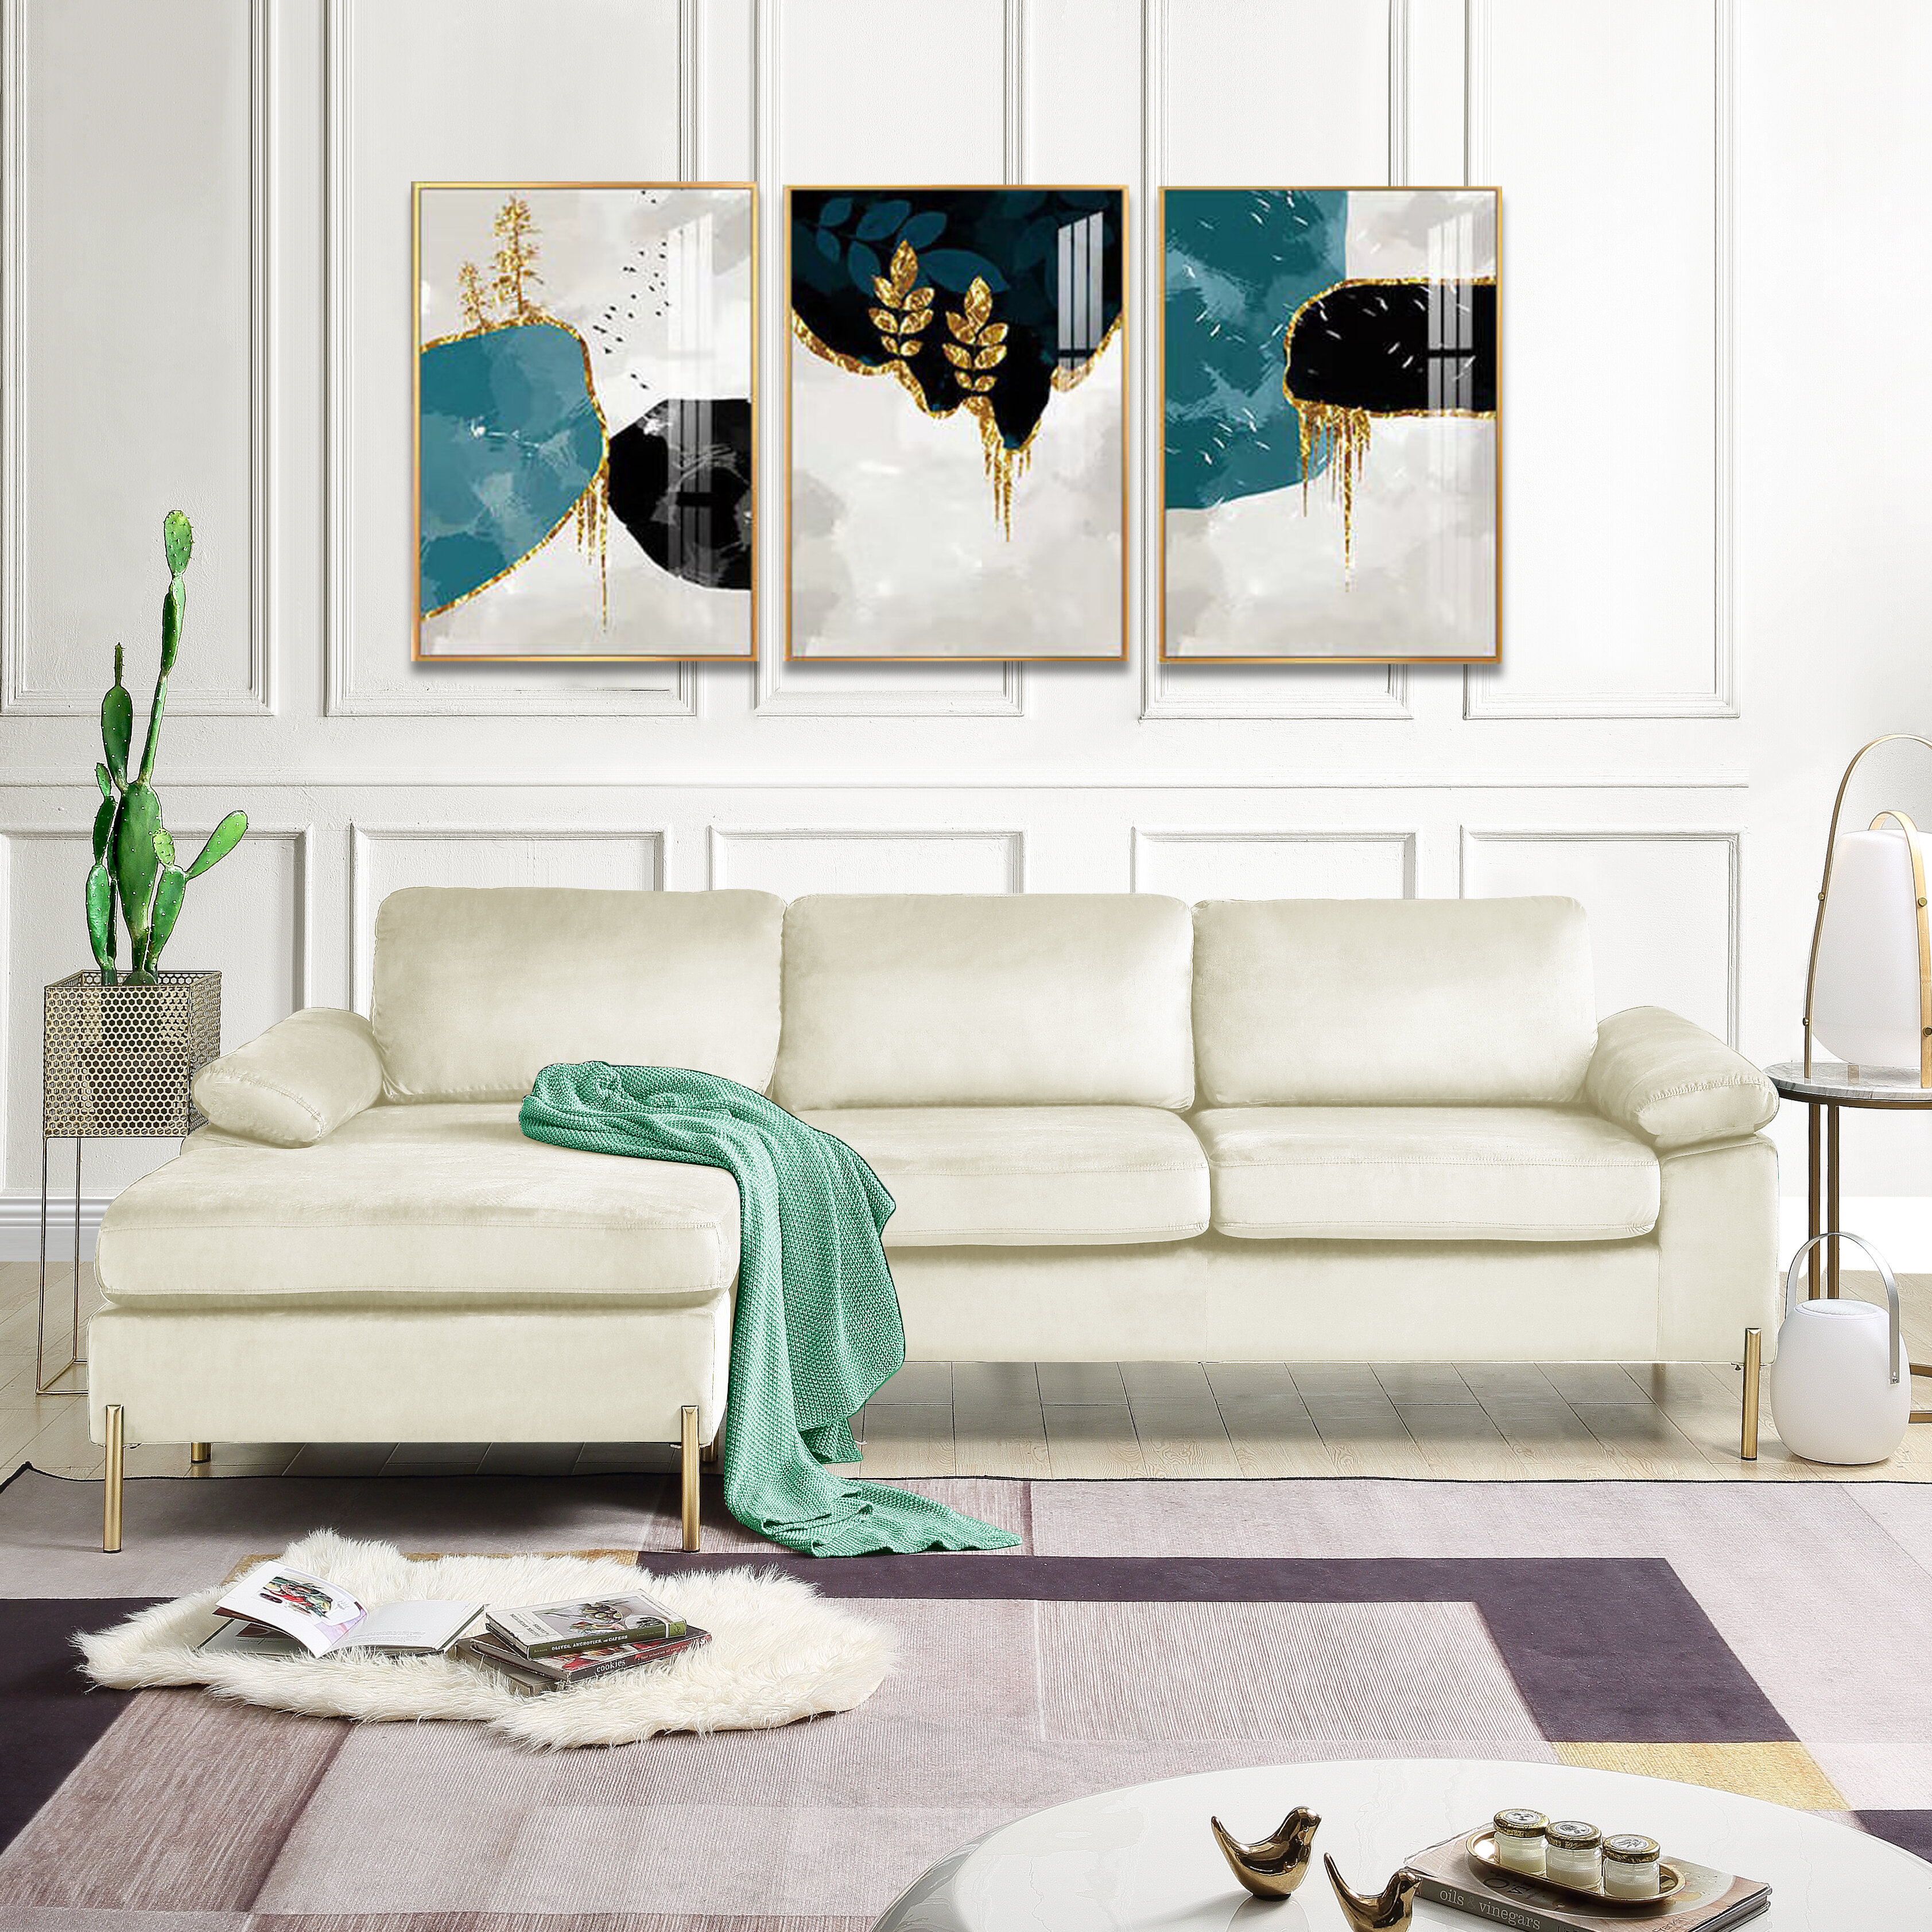 Lian 101″ Wide Velvet Reversible Sofa & Chaise